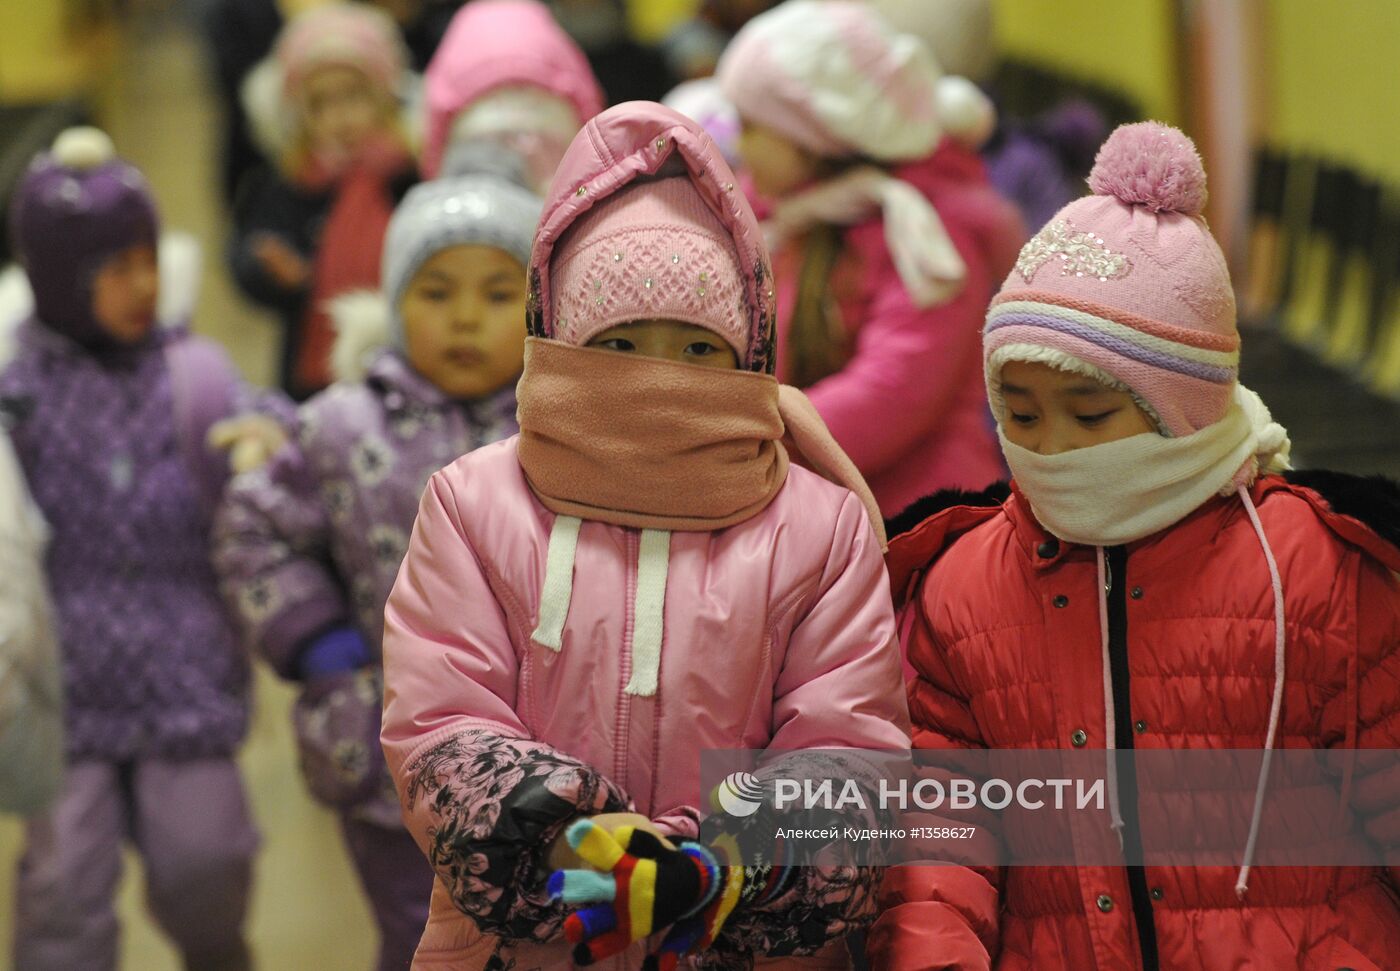 Обучение детей мигрантов в Москве